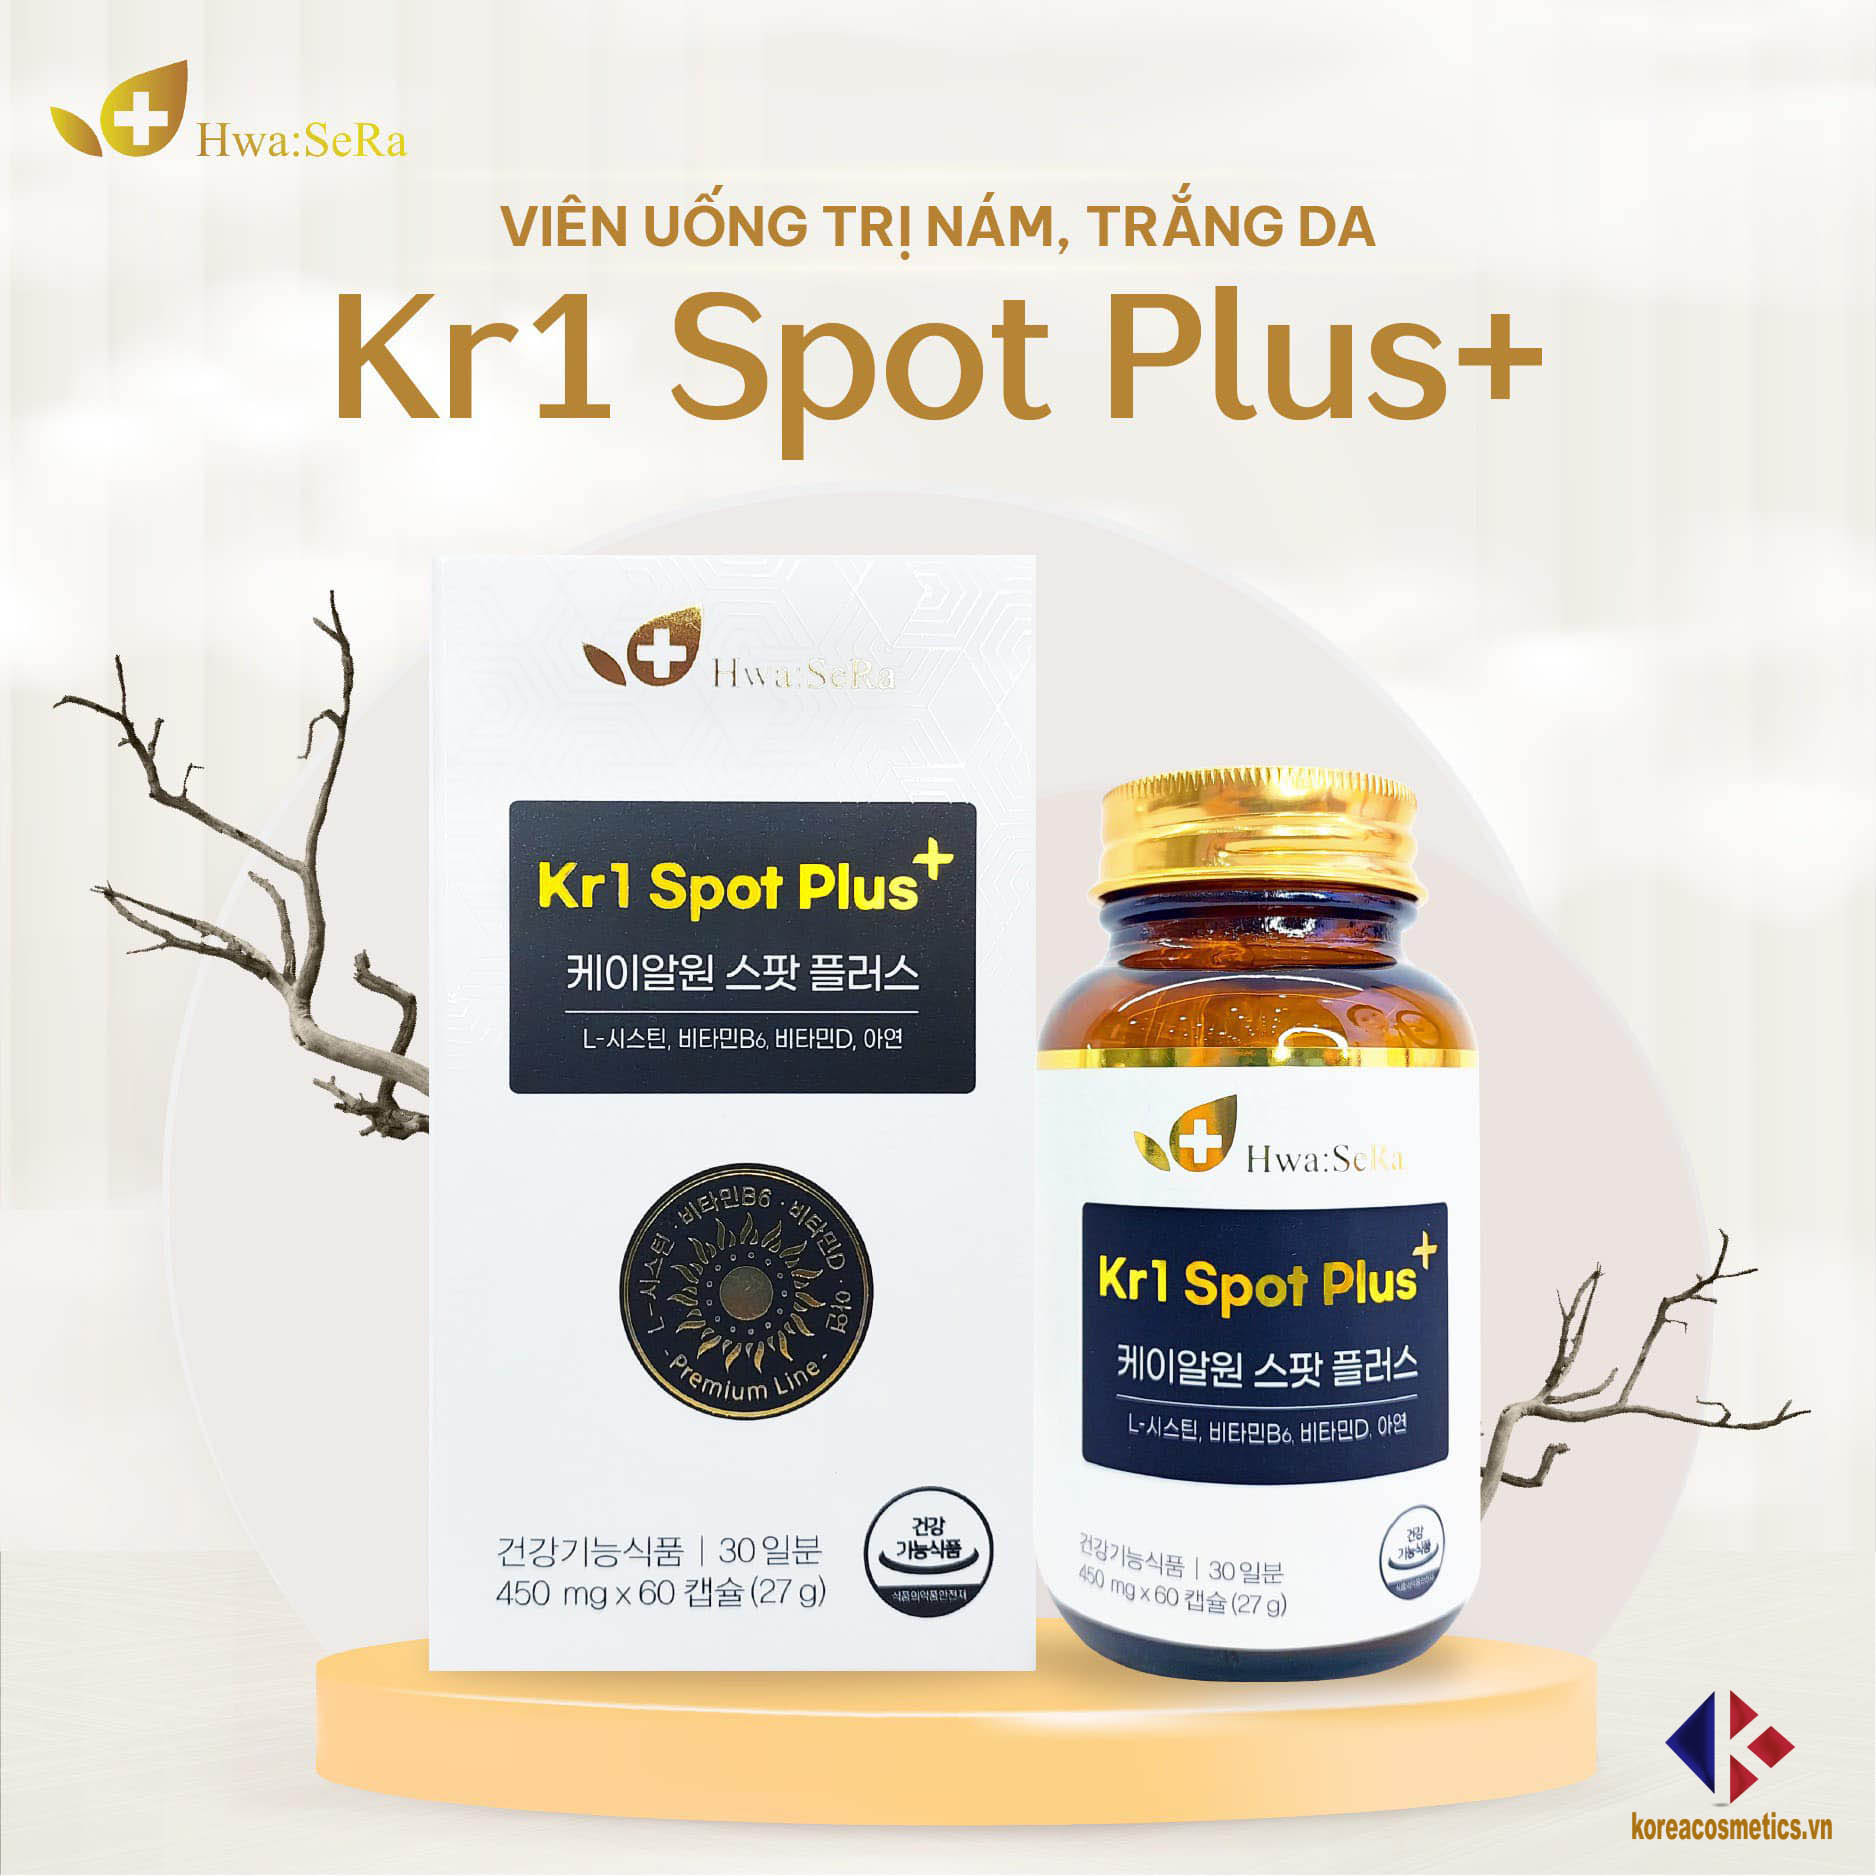 Kr1 Spot Plus+ Hwa Sera